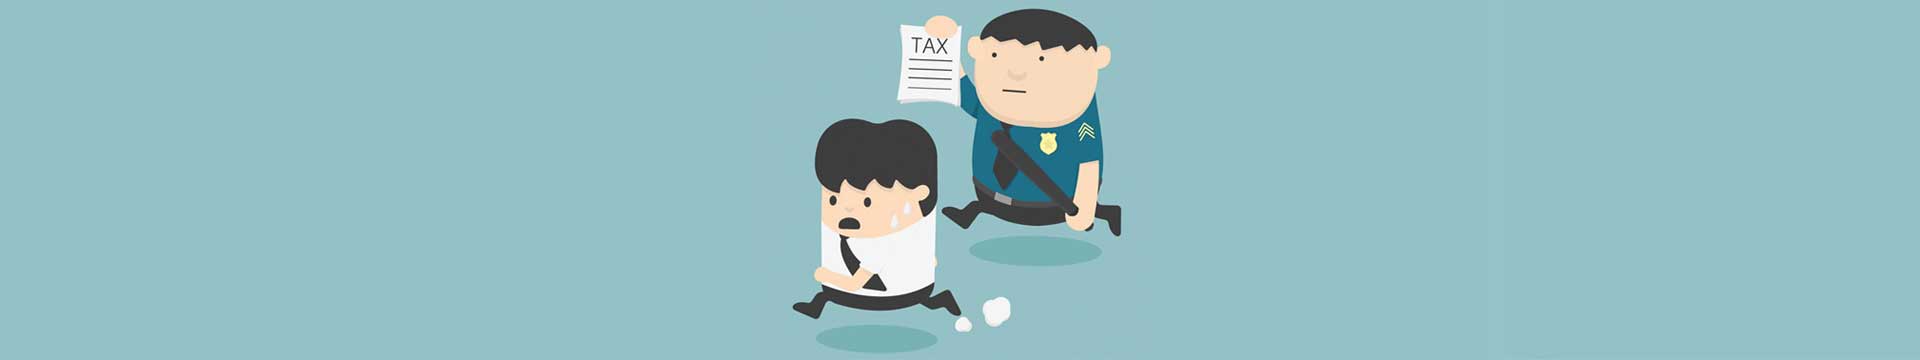 3 วิธีการประหยัดภาษีแบบผิด ๆ ที่คุณไม่ควรทำ